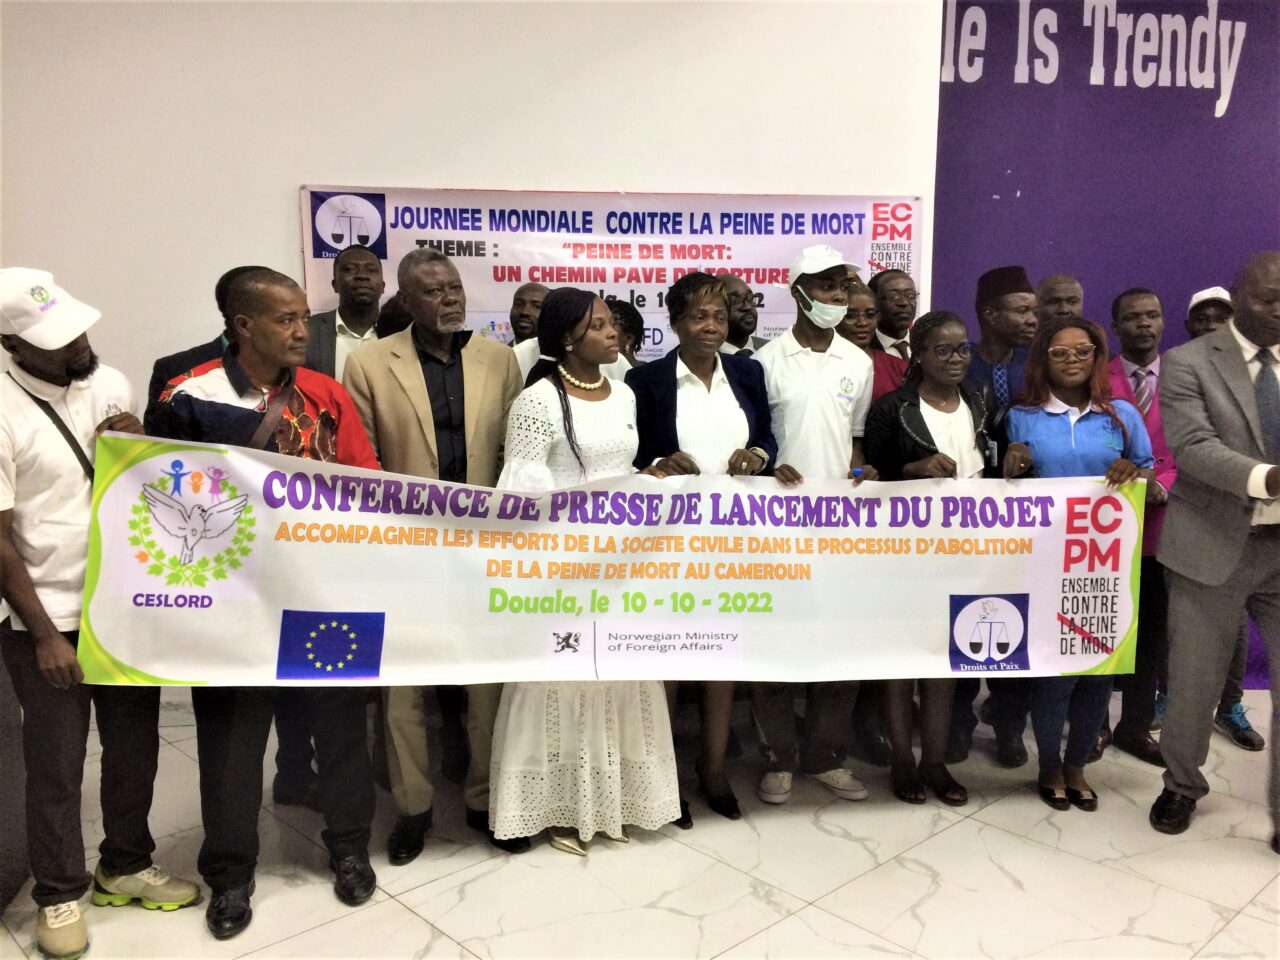 Douala le 10 octobre 2022. Conférence de presse de lancement du projet de lutte contre la peine de mort au Cameroun organisée par l'association Christ, éduque, soigne, loge, orphelins et démunis (Ceslord). (1)